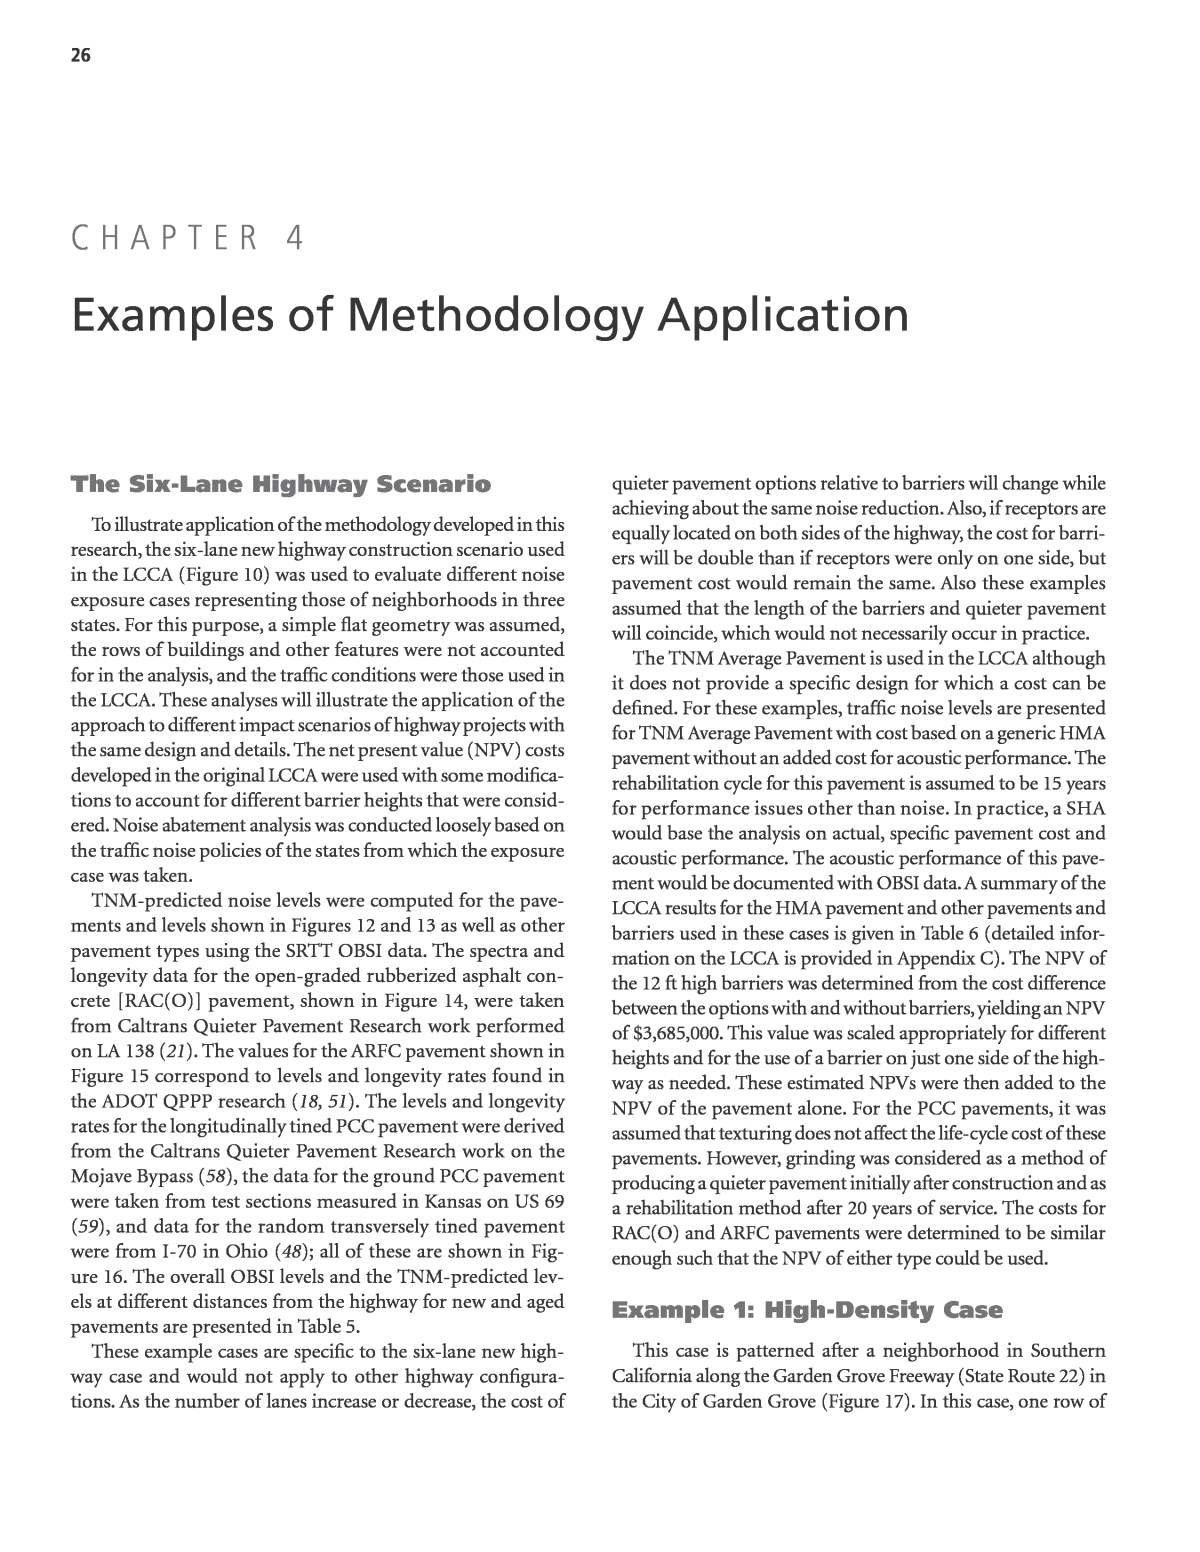 popular methodology chapter 4